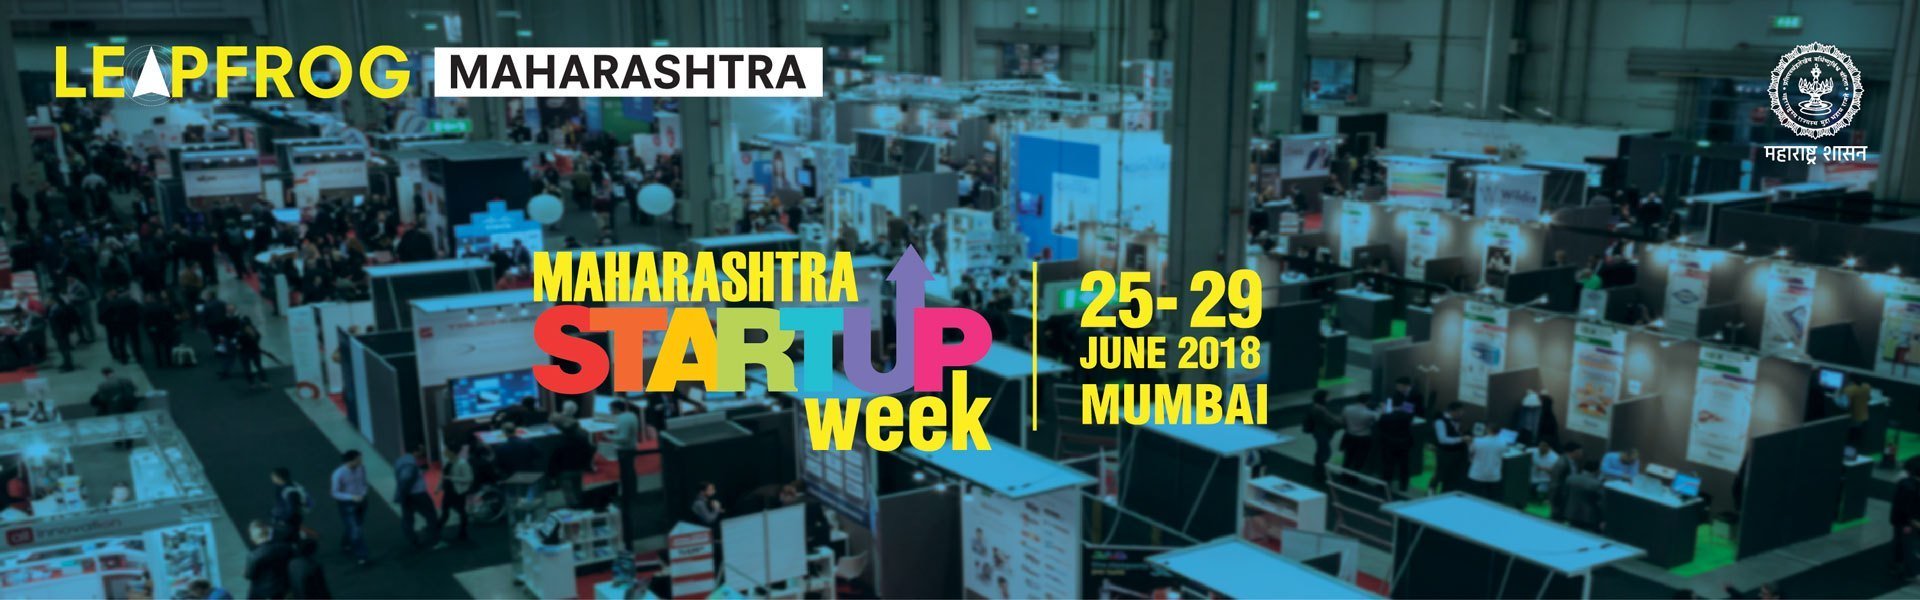 Maharashtra Startup Week